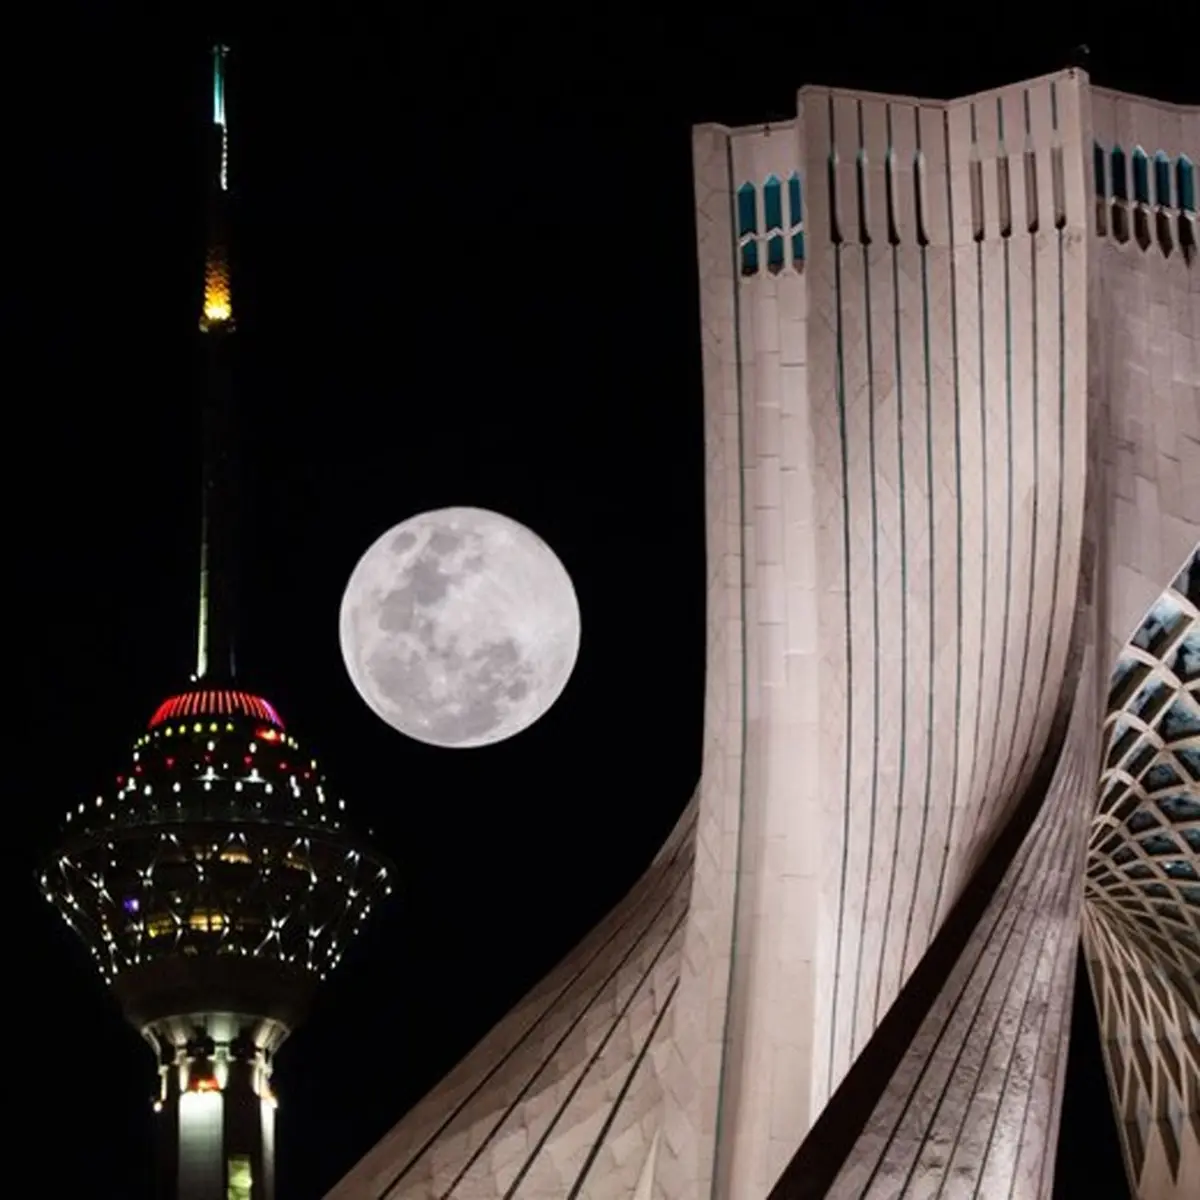  آیااین ماه زیبا دلیل زلزله دیشب تهران بود؟